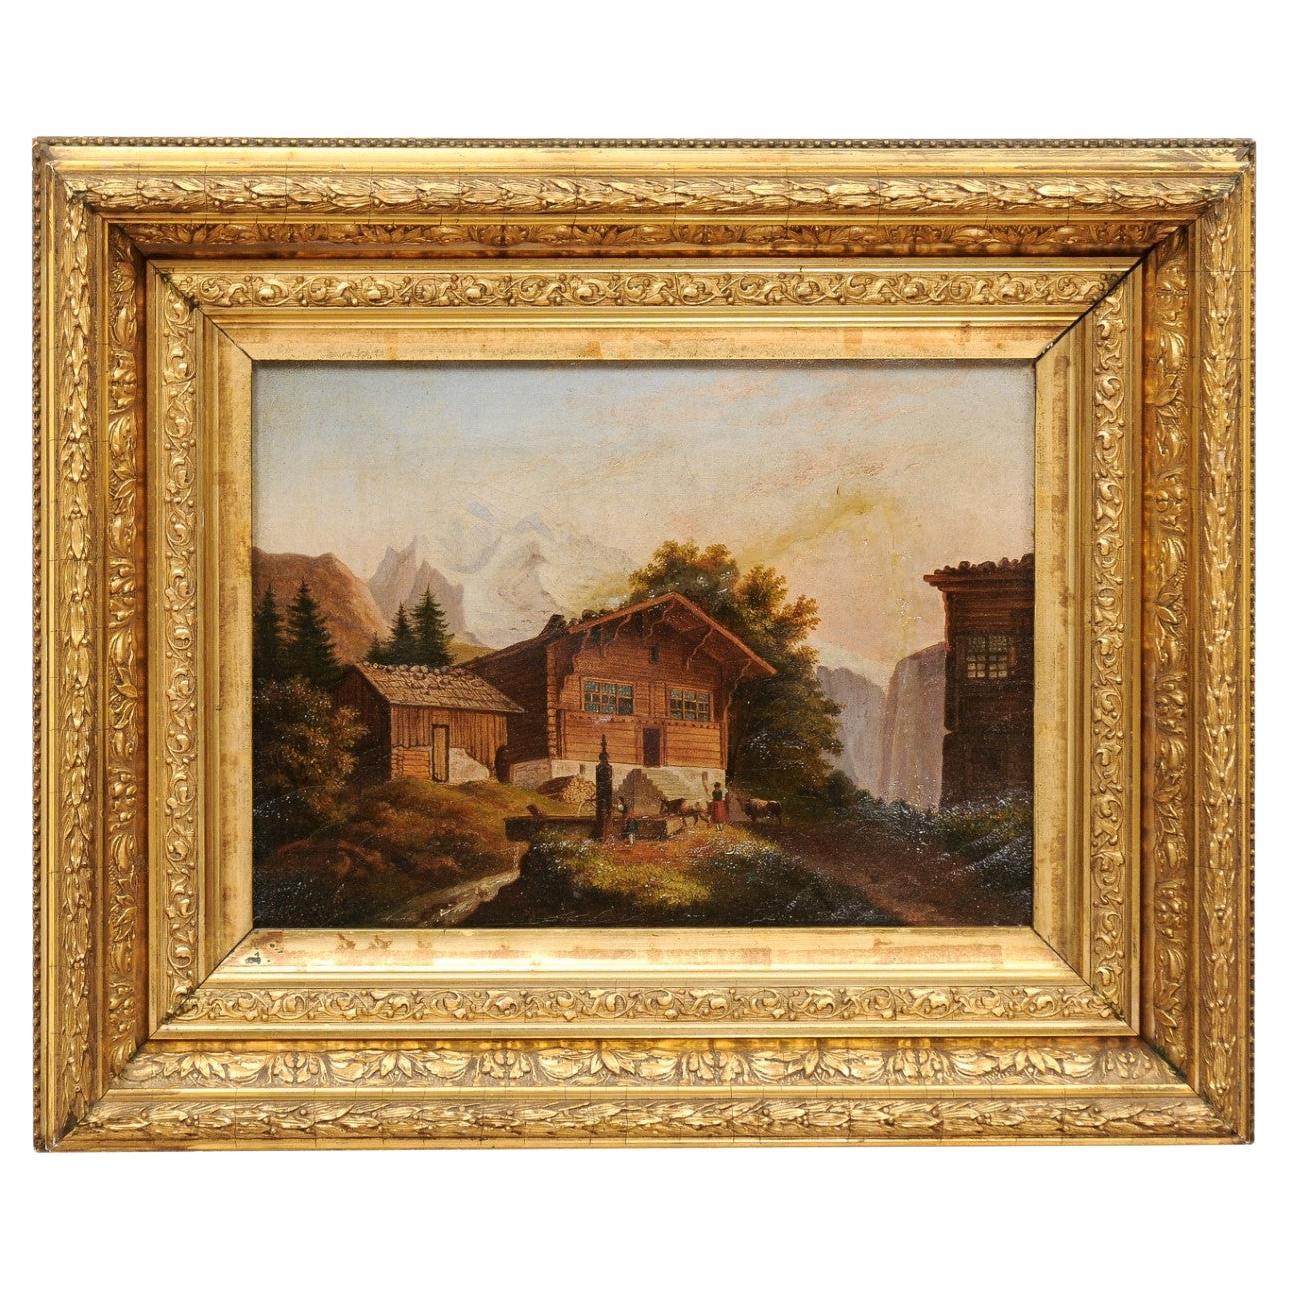  Peinture à l'huile sur toile encadrée en bois doré d'un chalet, 19ème siècle